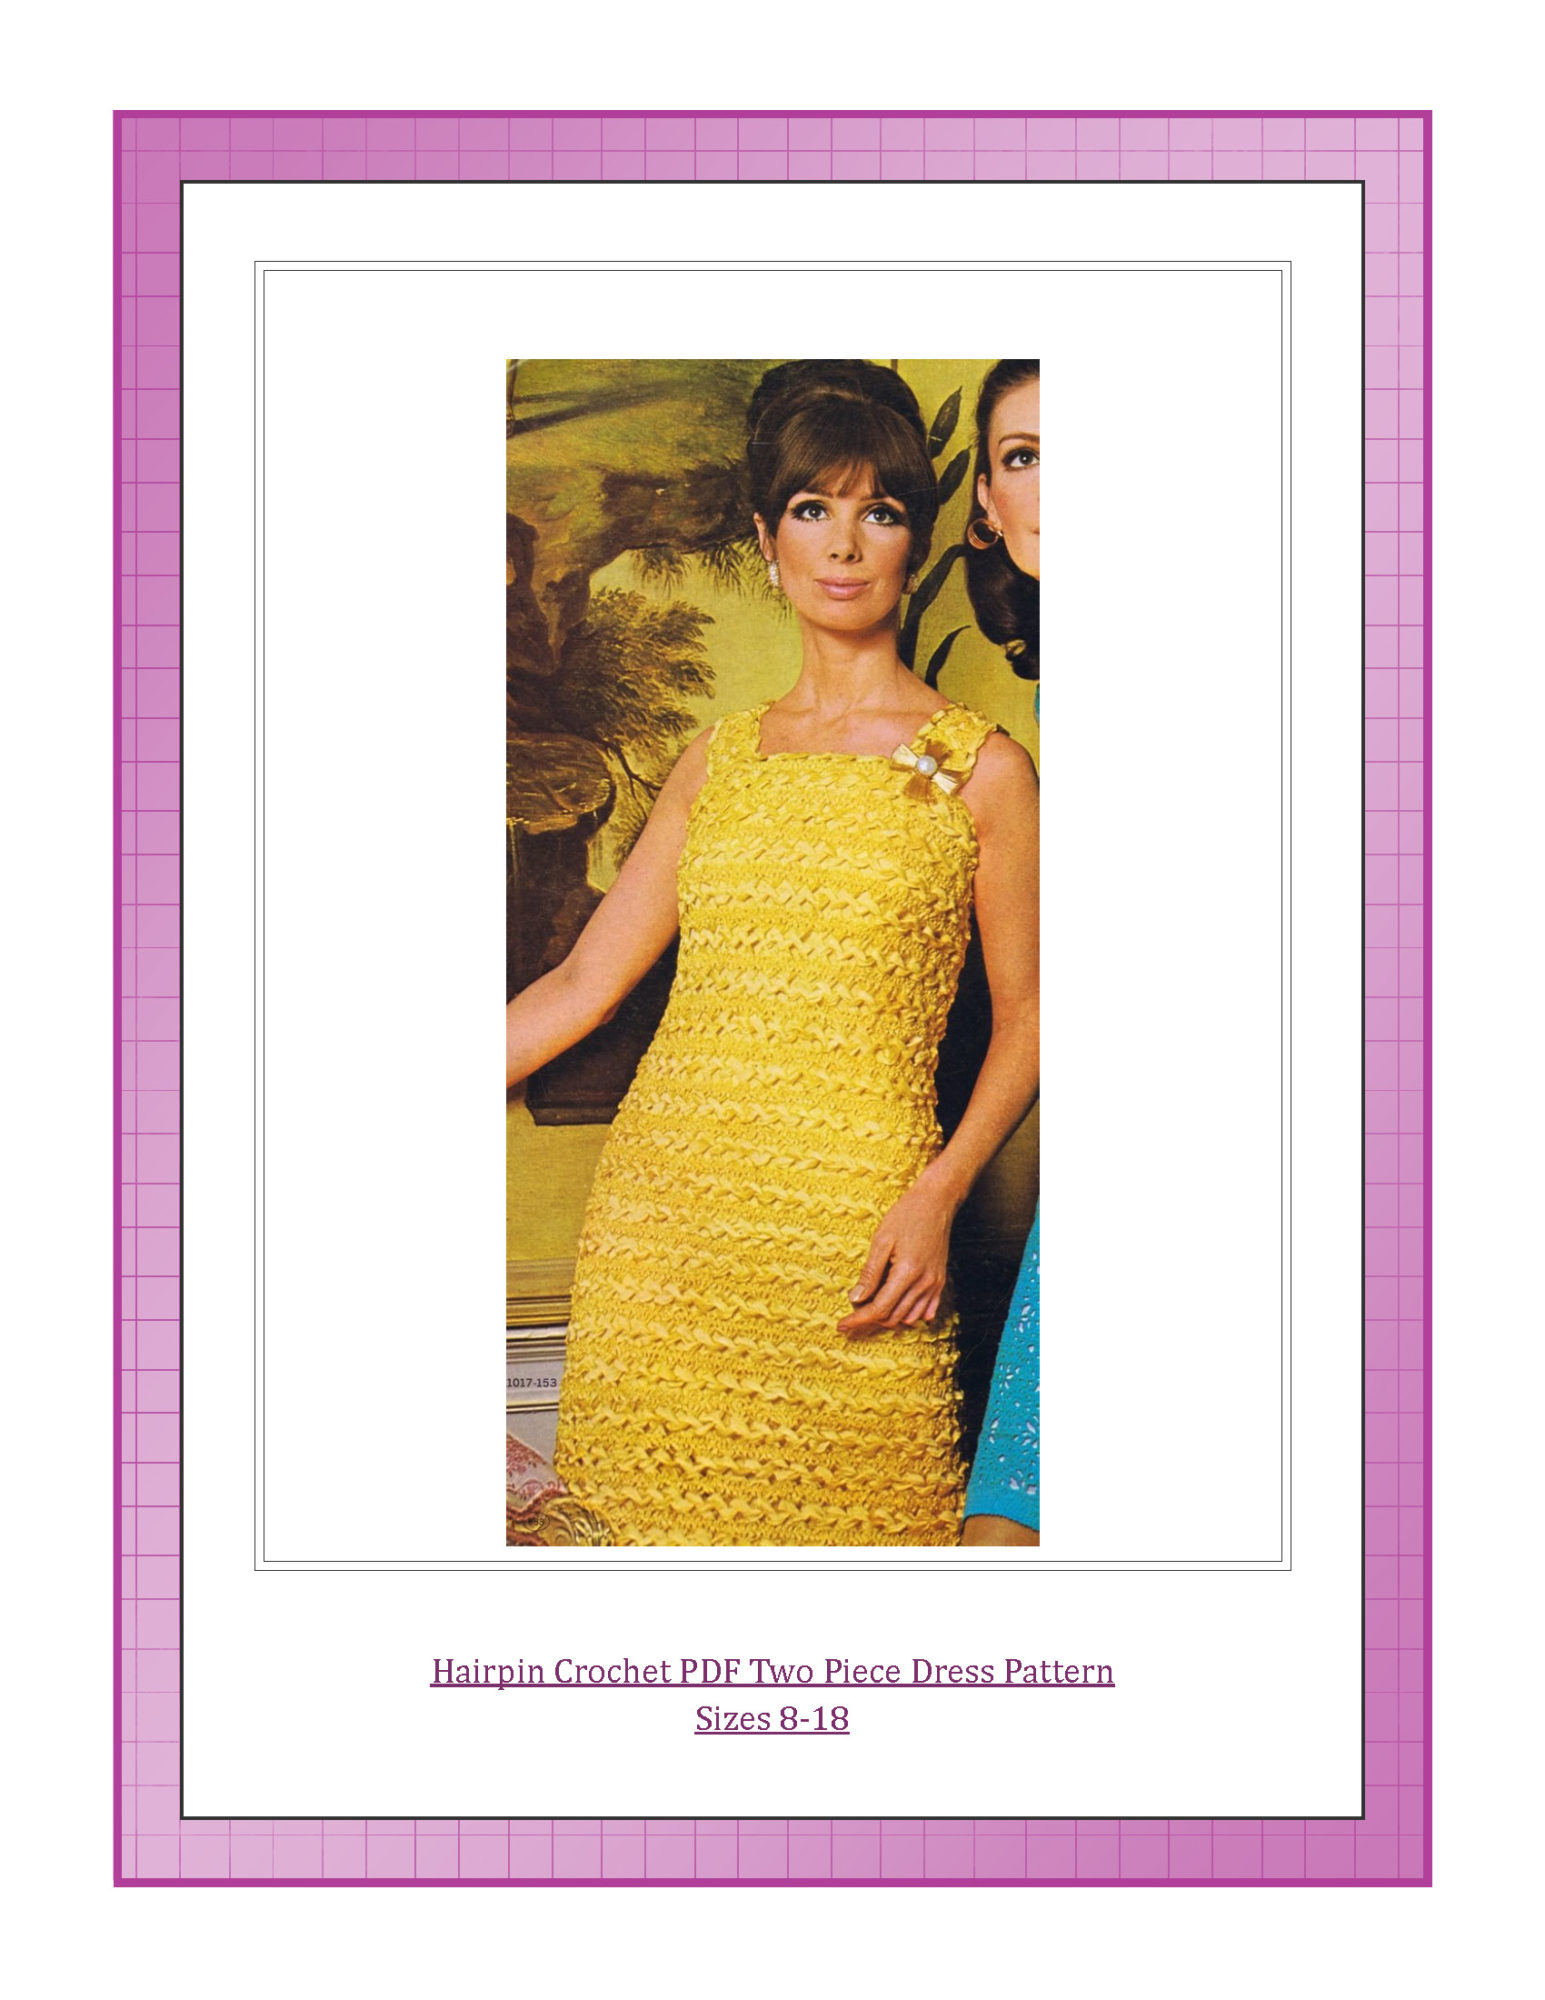 Hairpin Crochet PDF Two Piece Dress Pattern Sizes 8-18